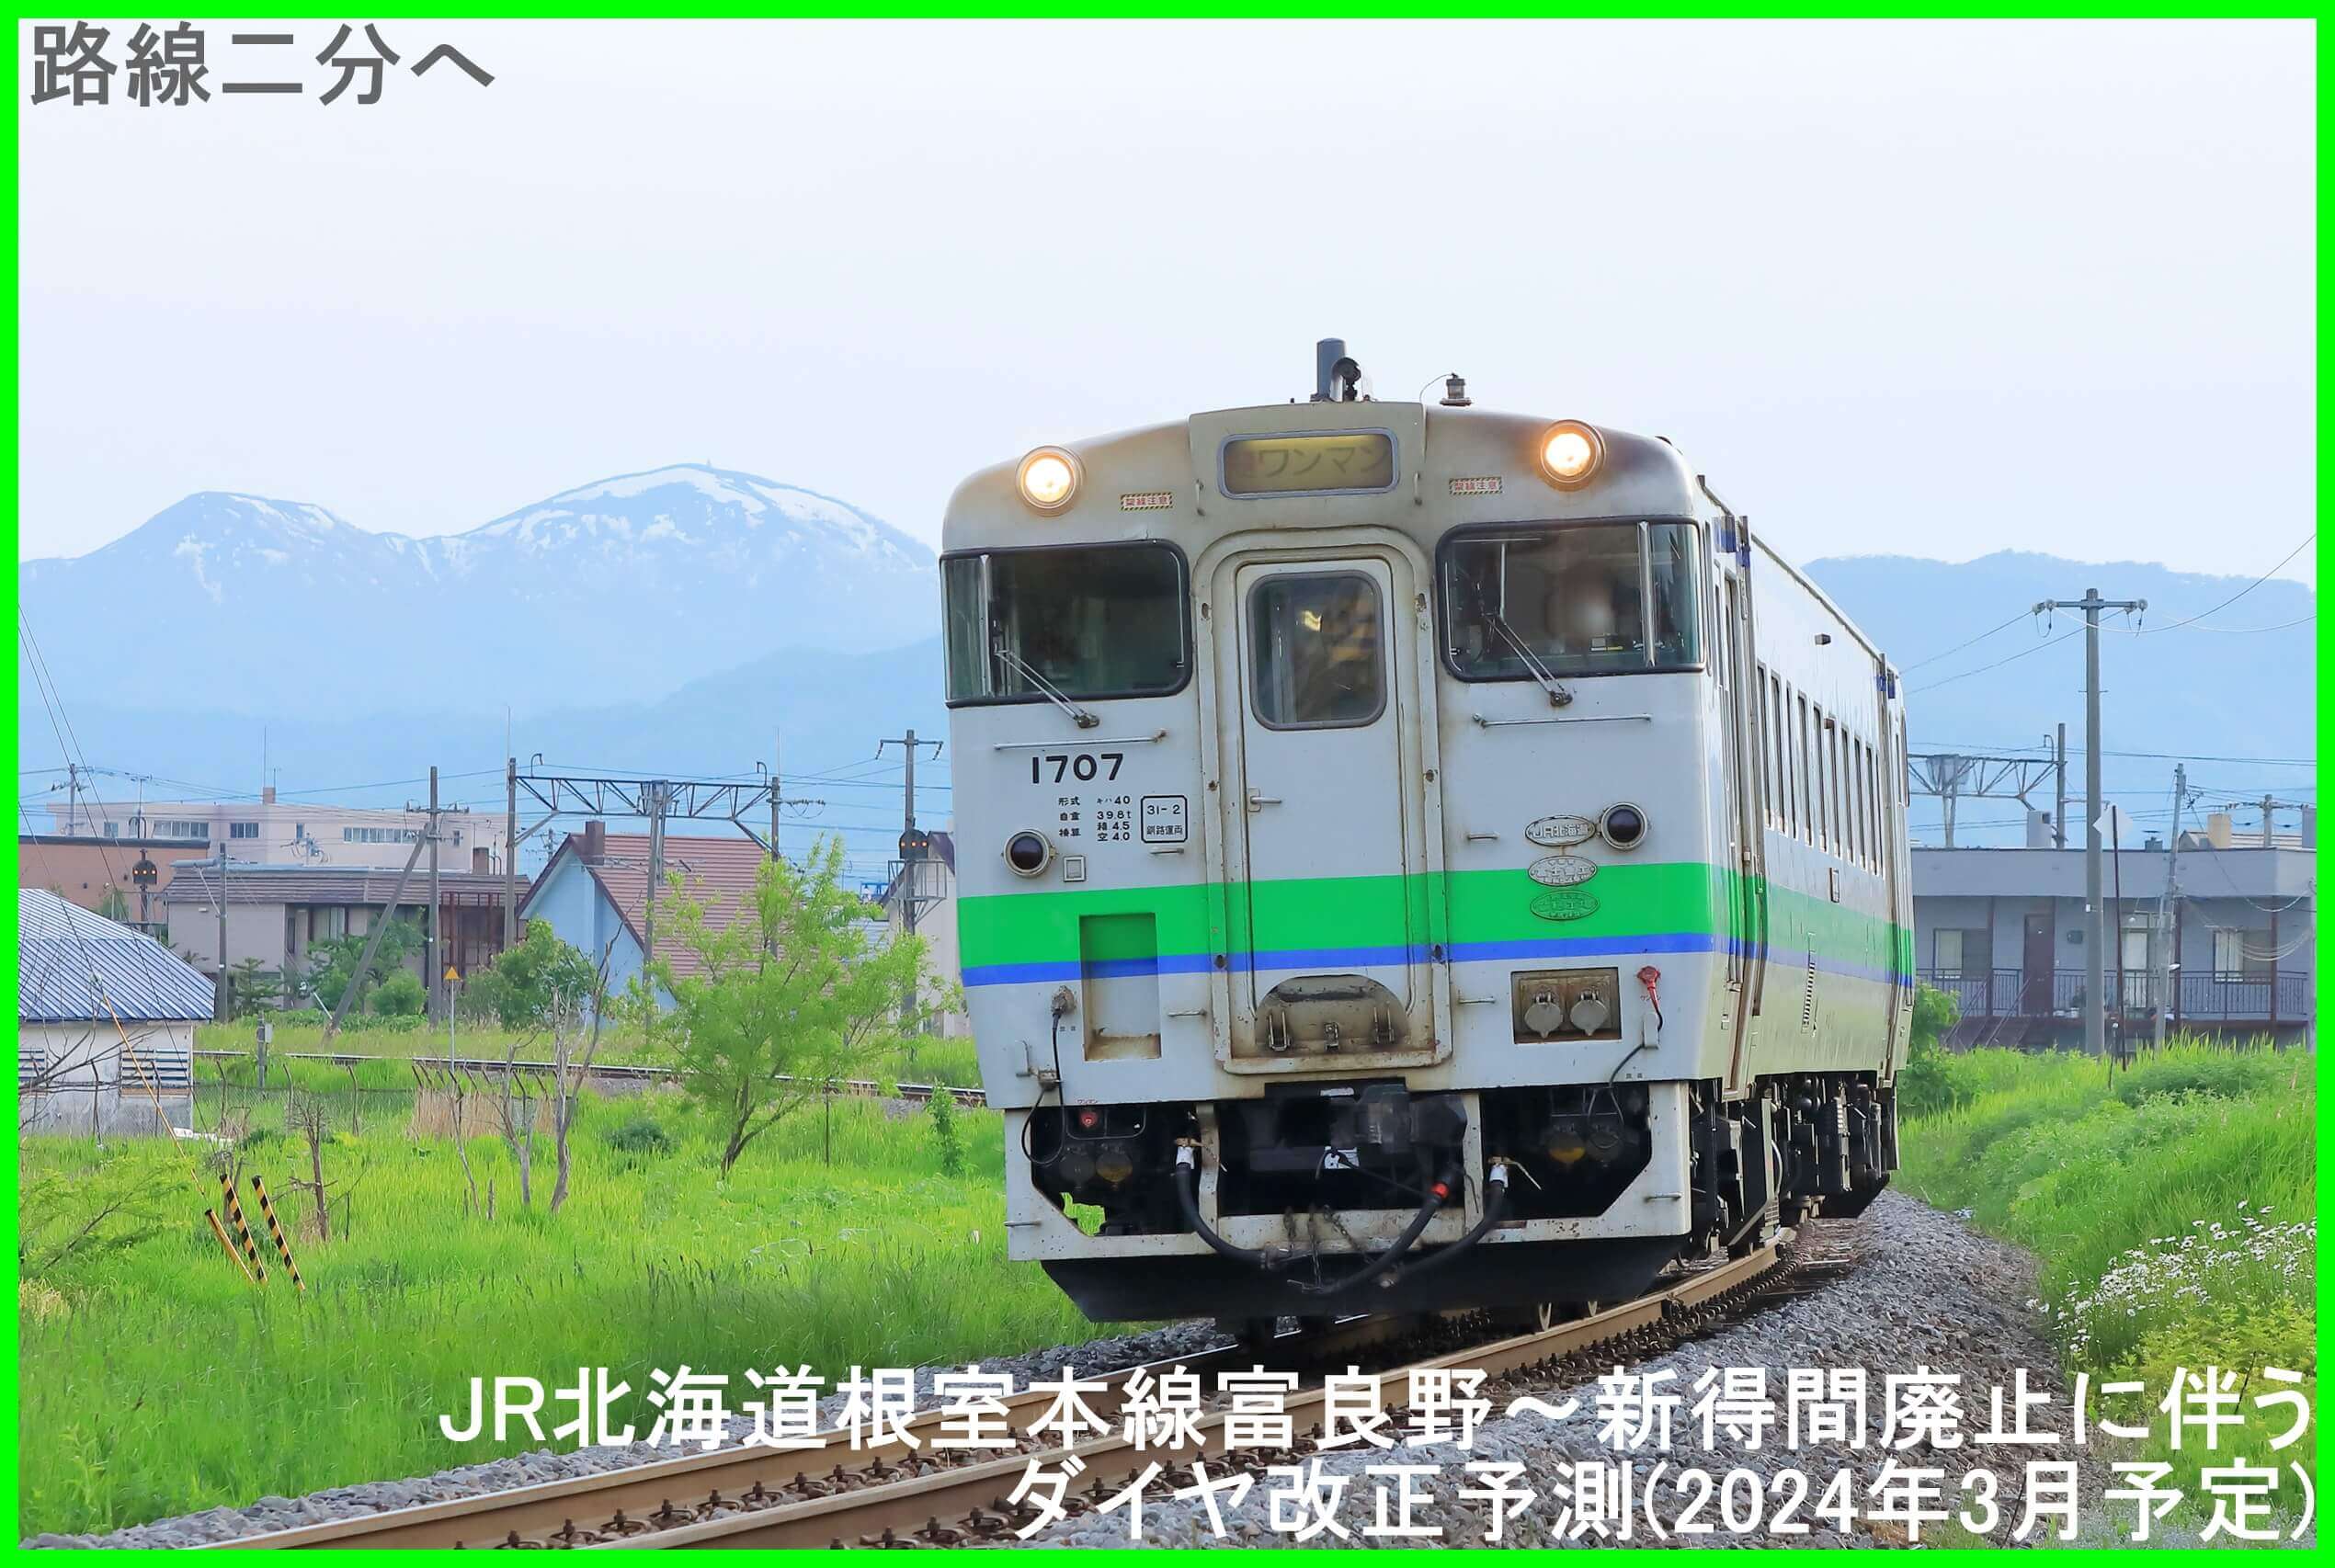 路線二分へ　JR北海道根室本線富良野～新得間廃止に伴うダイヤ改正予測(2024年3月予定)